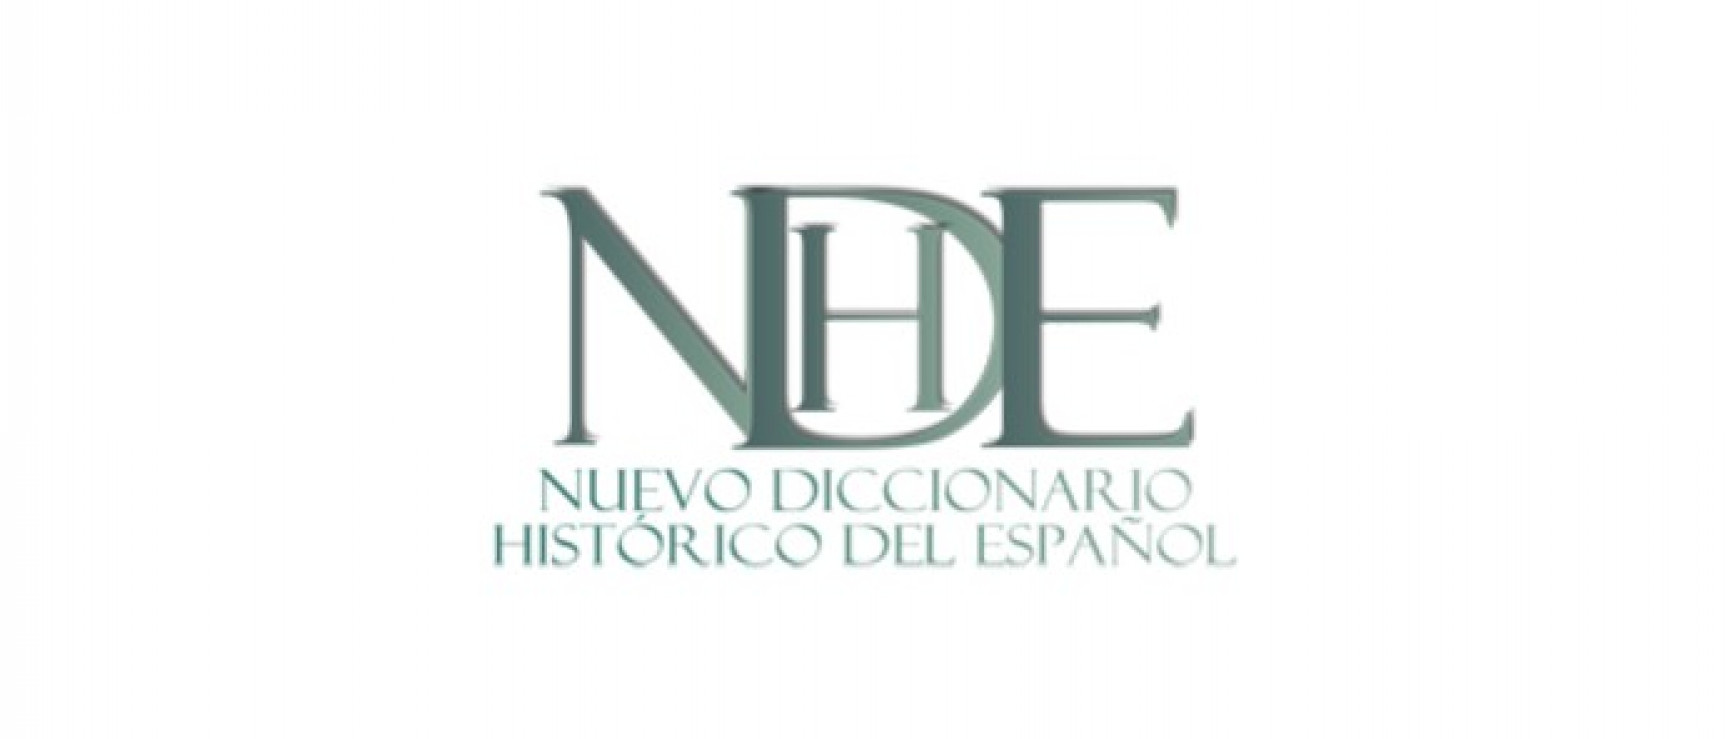 Nuevo diccionario histórico del español